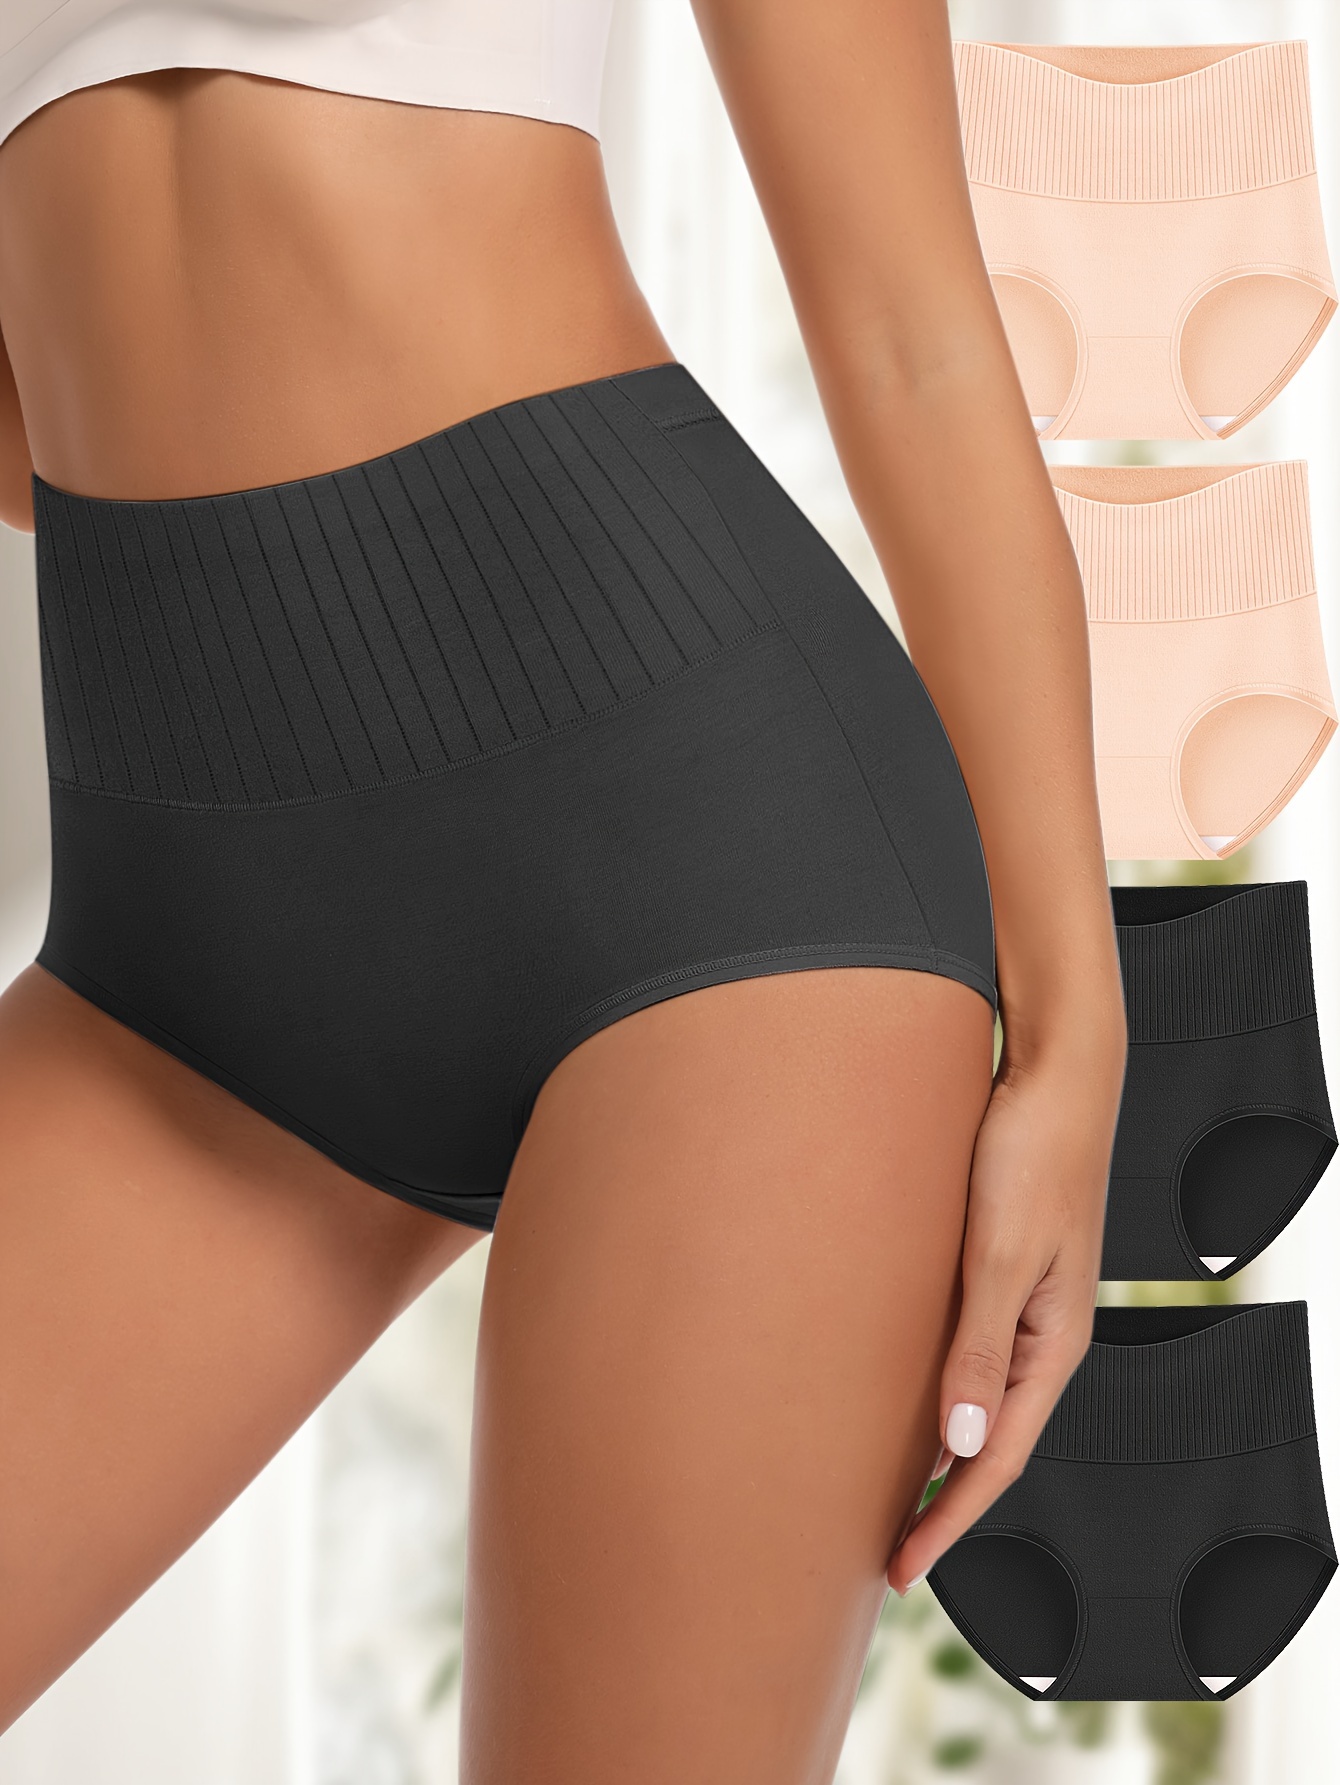 Women Underwear High Waist Briefs Tummy Control Panties Ladies